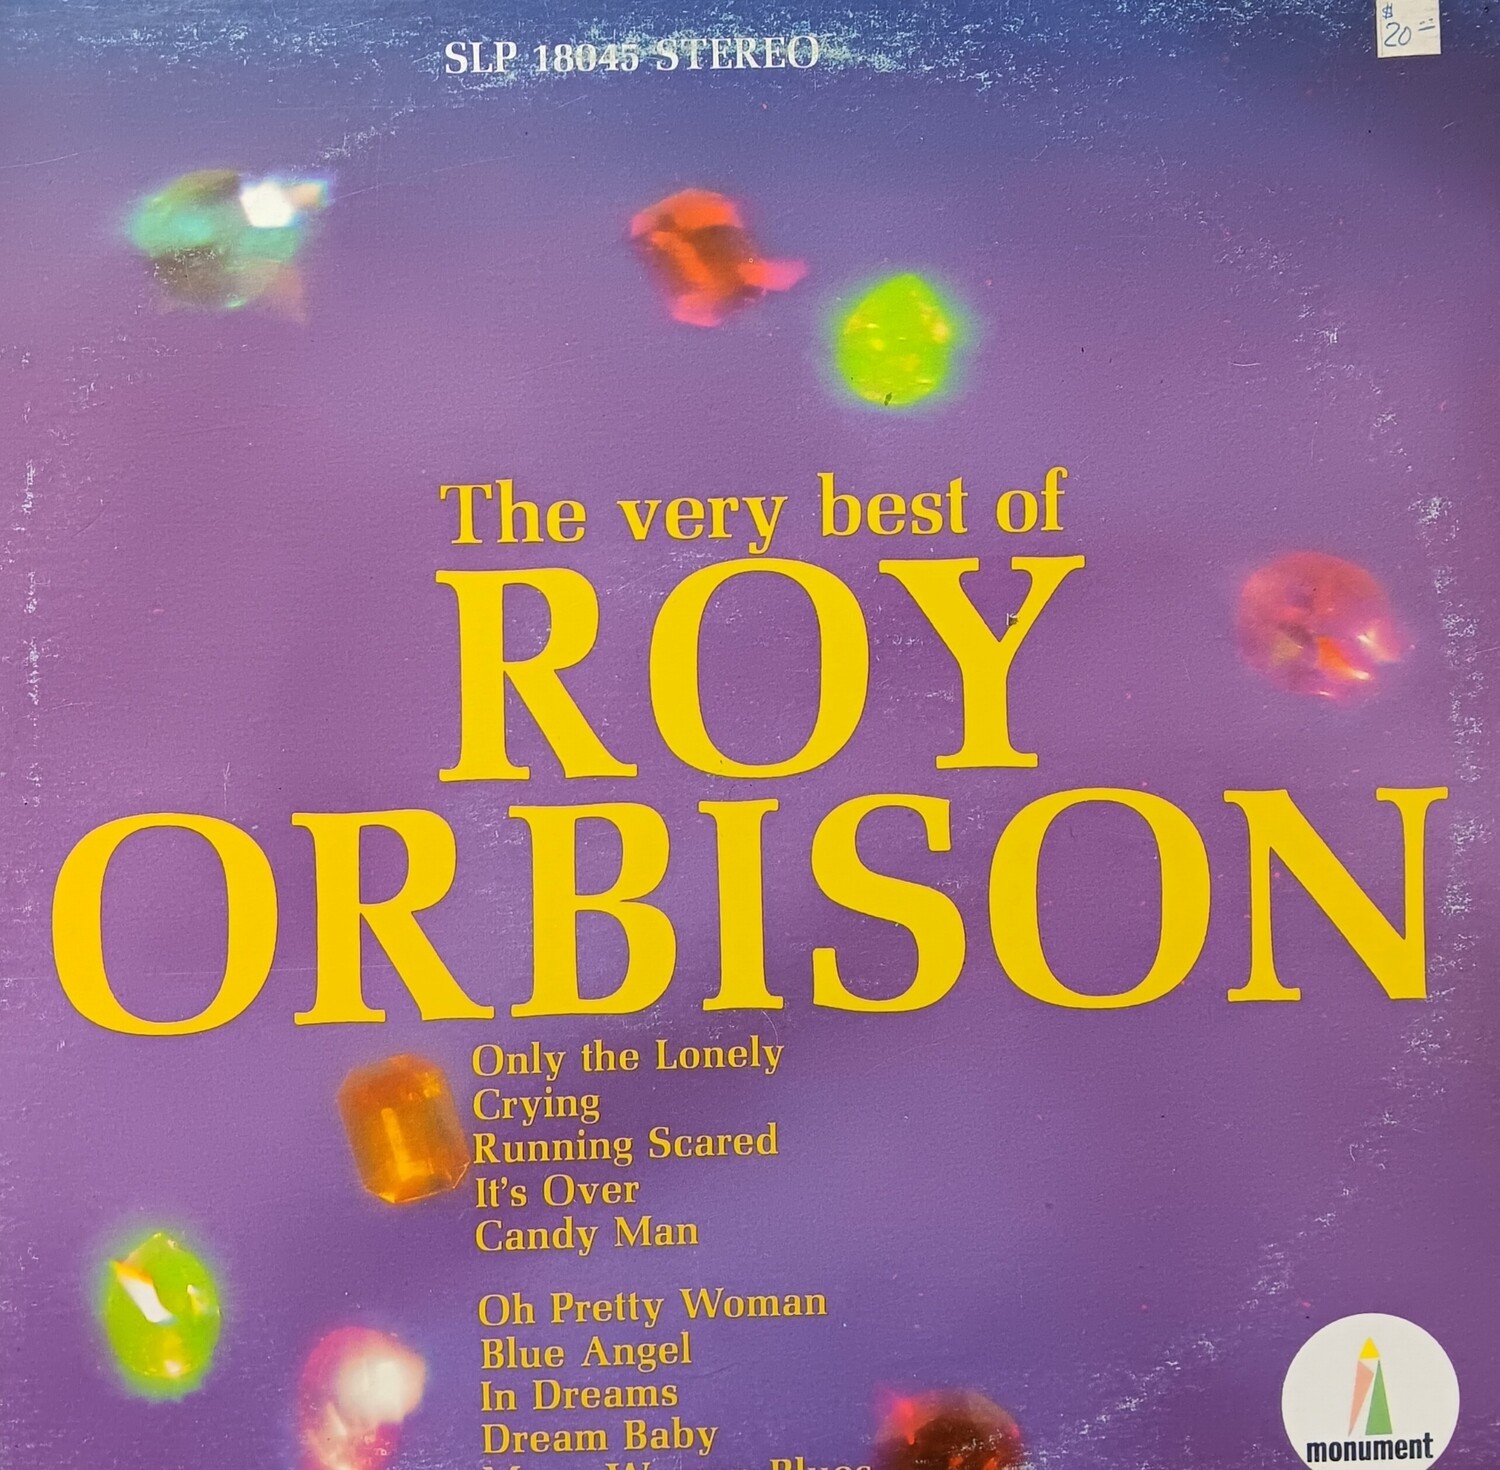 ROY ORBISON - The very Best of Roy Orbison